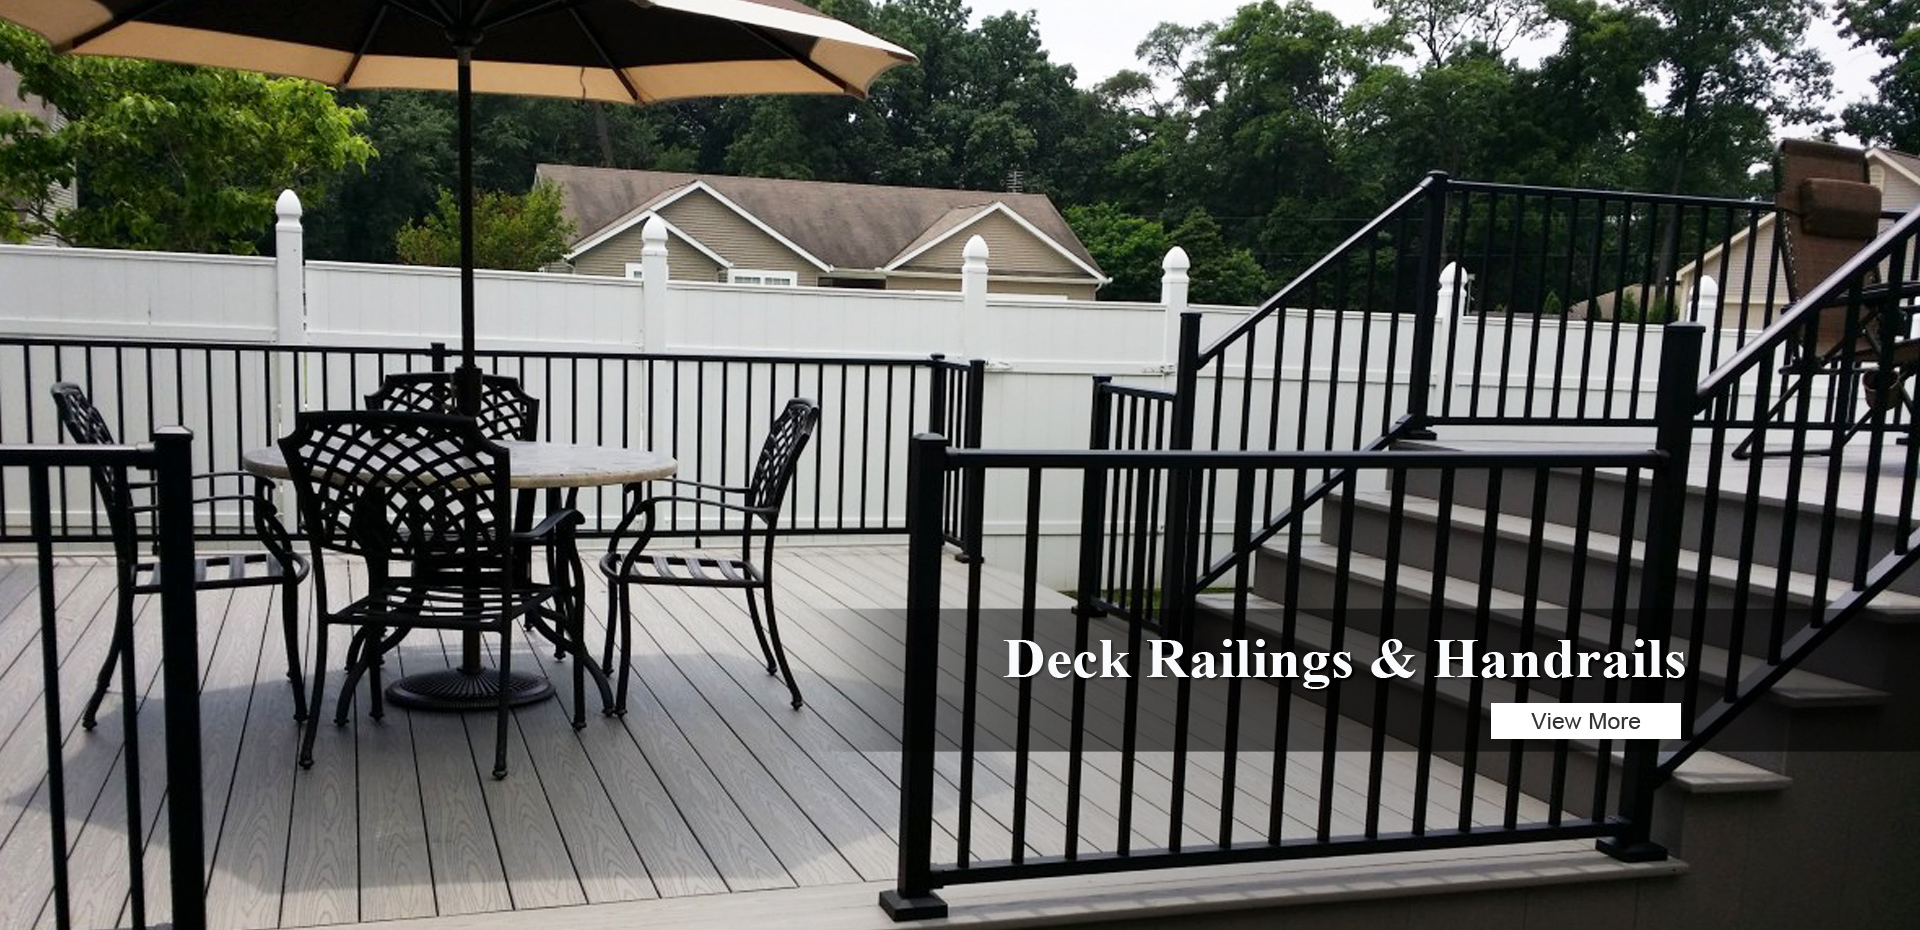 Deck Railings & Handrails